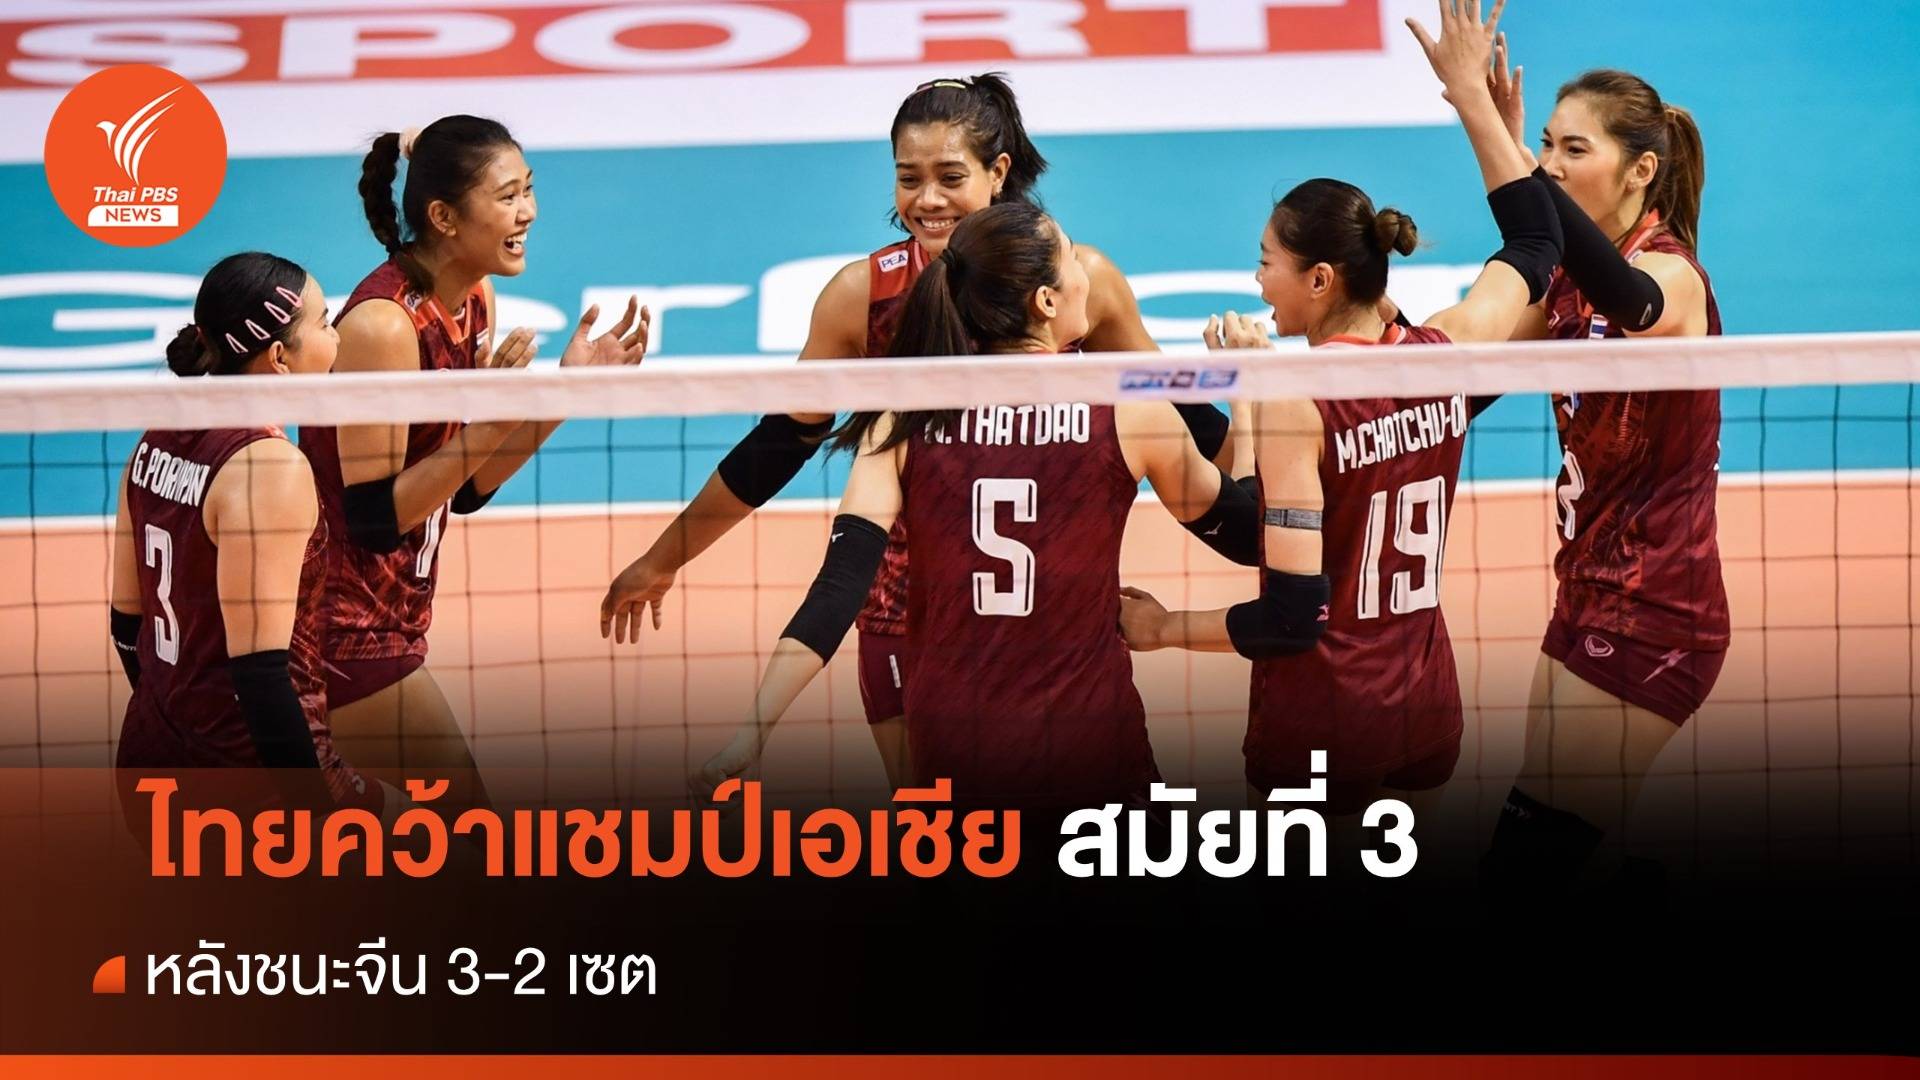 วอลเลย์บอลหญิงไทย คว้าแชมป์เอเชียสมัย 3 หลังชนะจีน 3-2 เซต